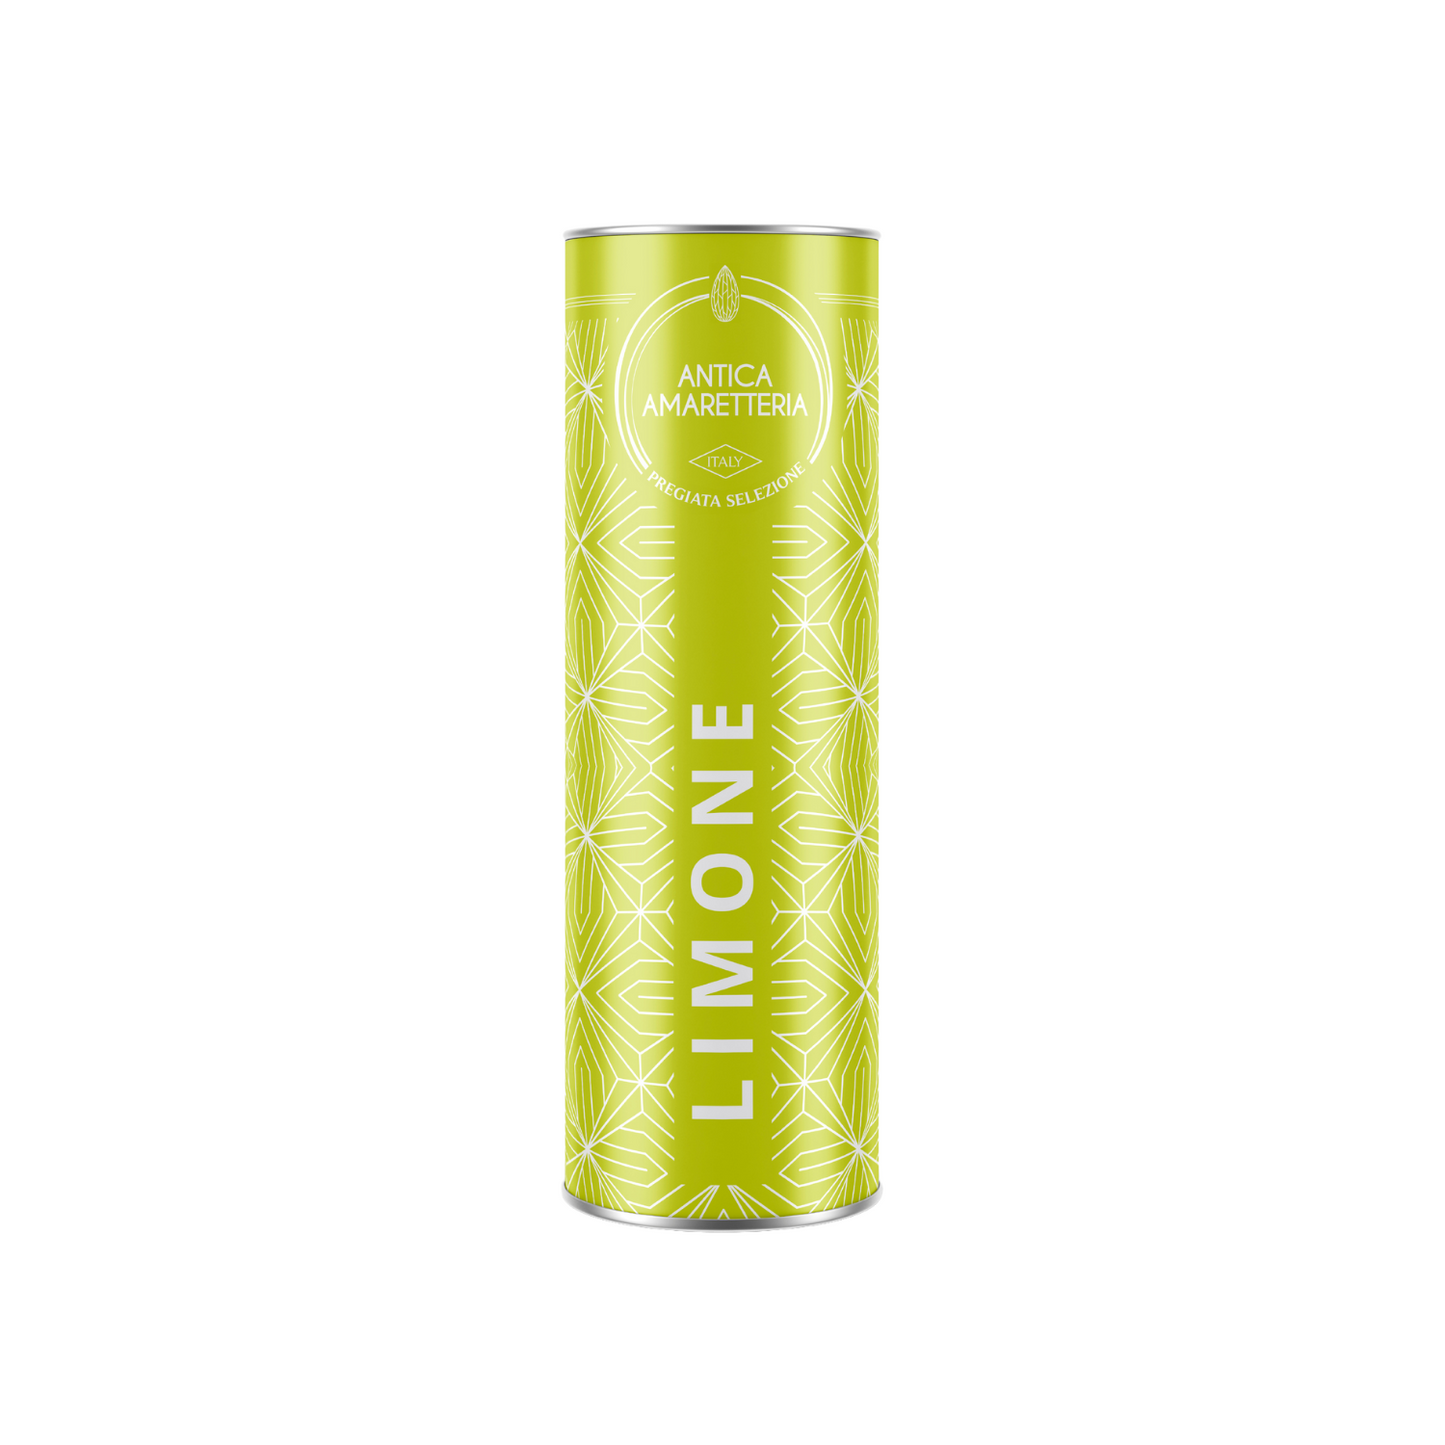 Amaretti Morbidi in tubo al Limone - GIFT BOX - 150gr